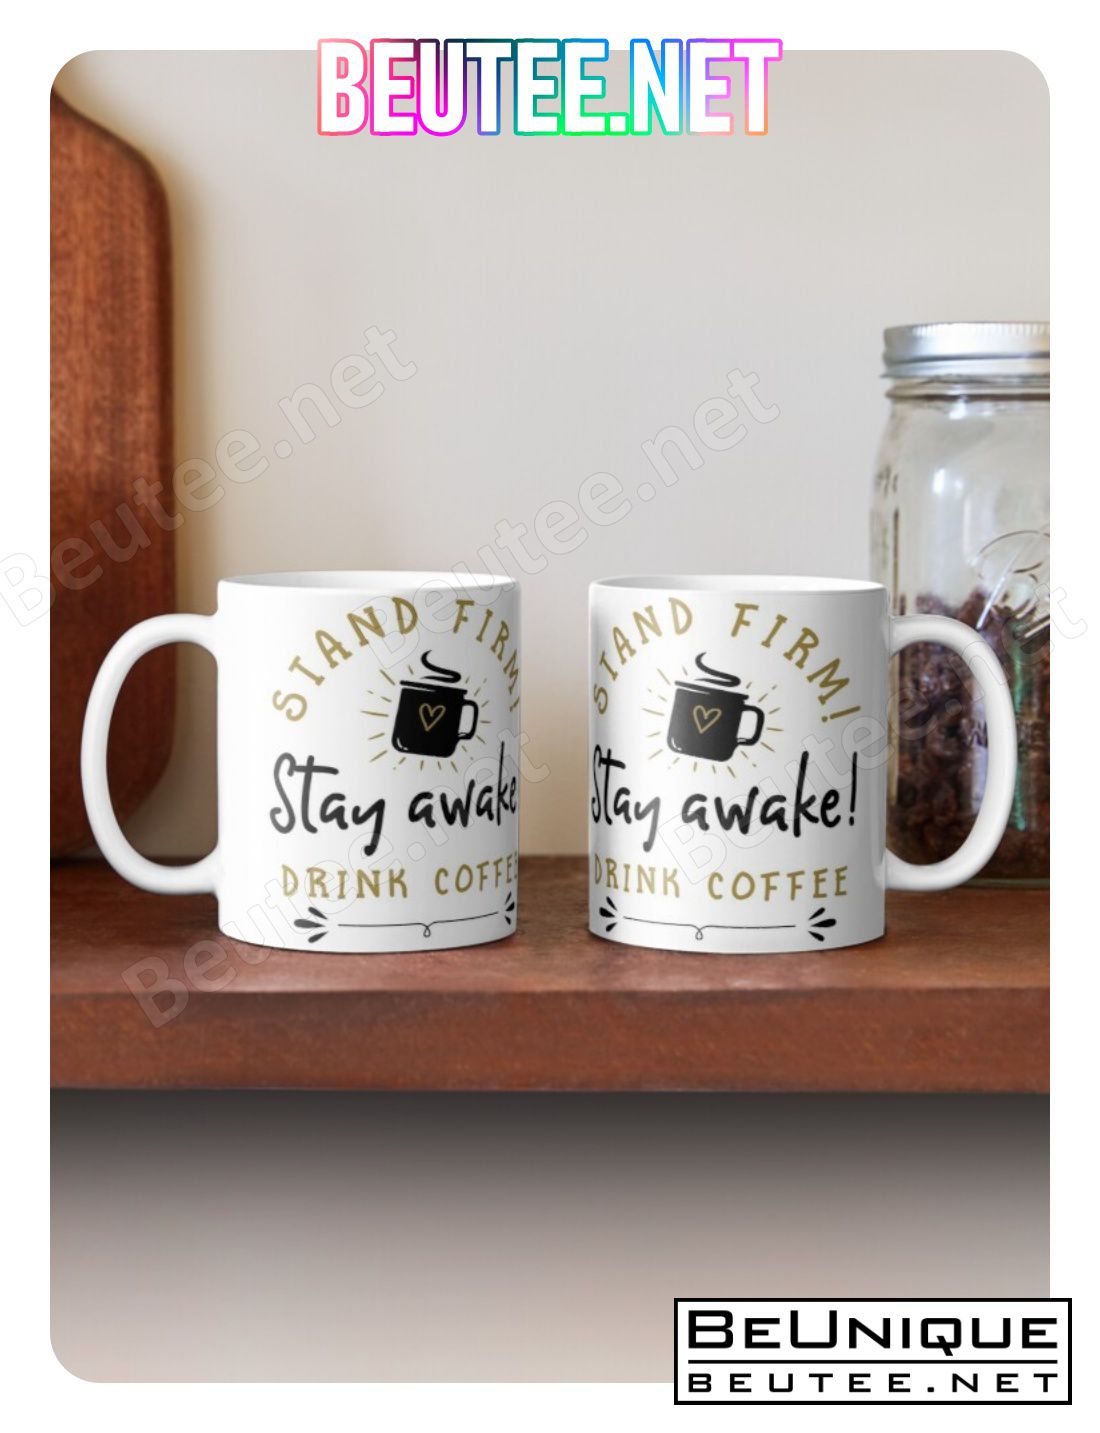 Stand Firm! Stay Awake! Drink Coffee Coffee Mug